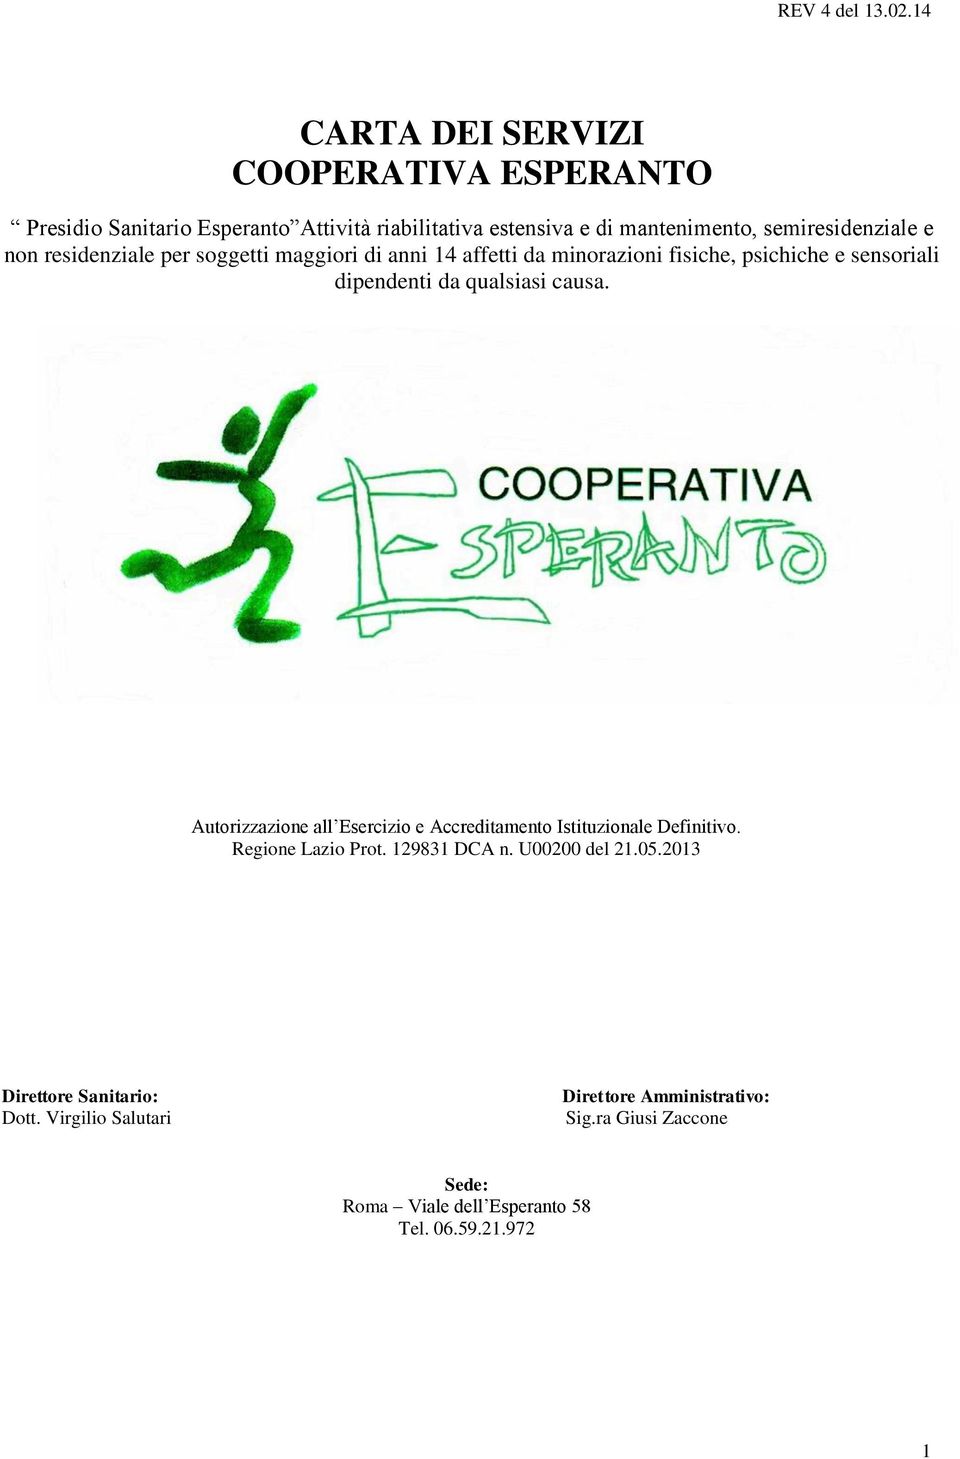 Autorizzazione all Esercizio e Accreditamento Istituzionale Definitivo. Regione Lazio Prot. 129831 DCA n. U00200 del 21.05.